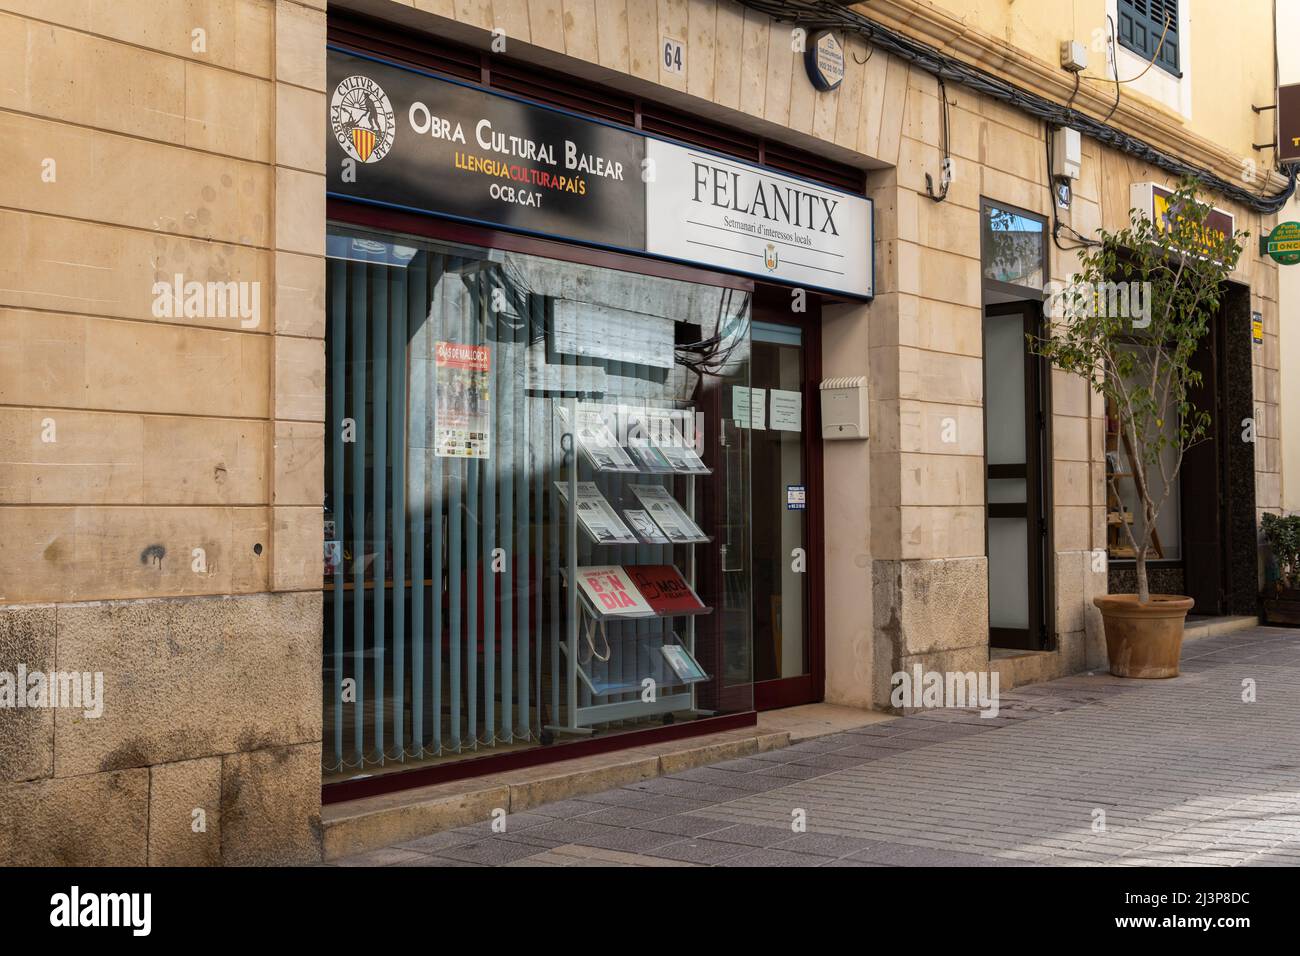 Felanitx, Spanien; april 07 2022: Hauptfassade des Hauptsitzes von Obra Cultural Balear, in der mallorquinischen Stadt Felanitx, Spanien Stockfoto